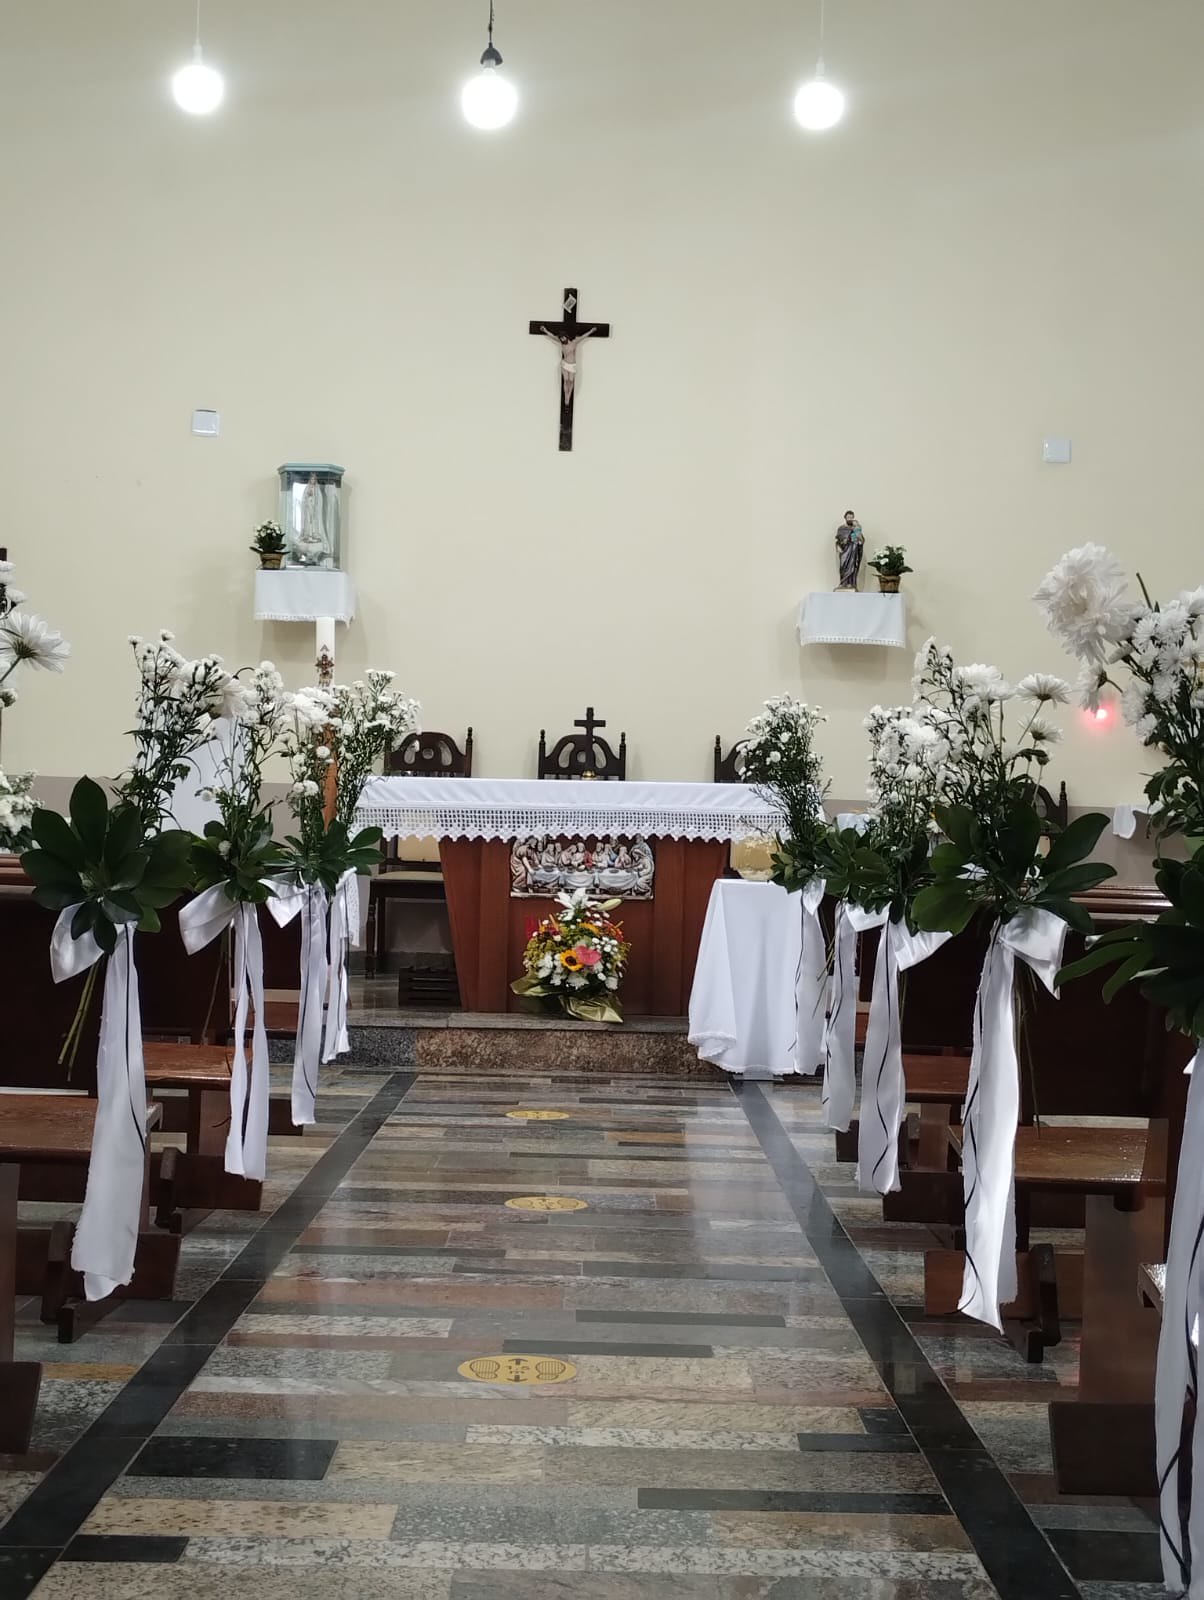 Capela Nossa Senhora de Fátima celebra a padroeira no próximo sábado